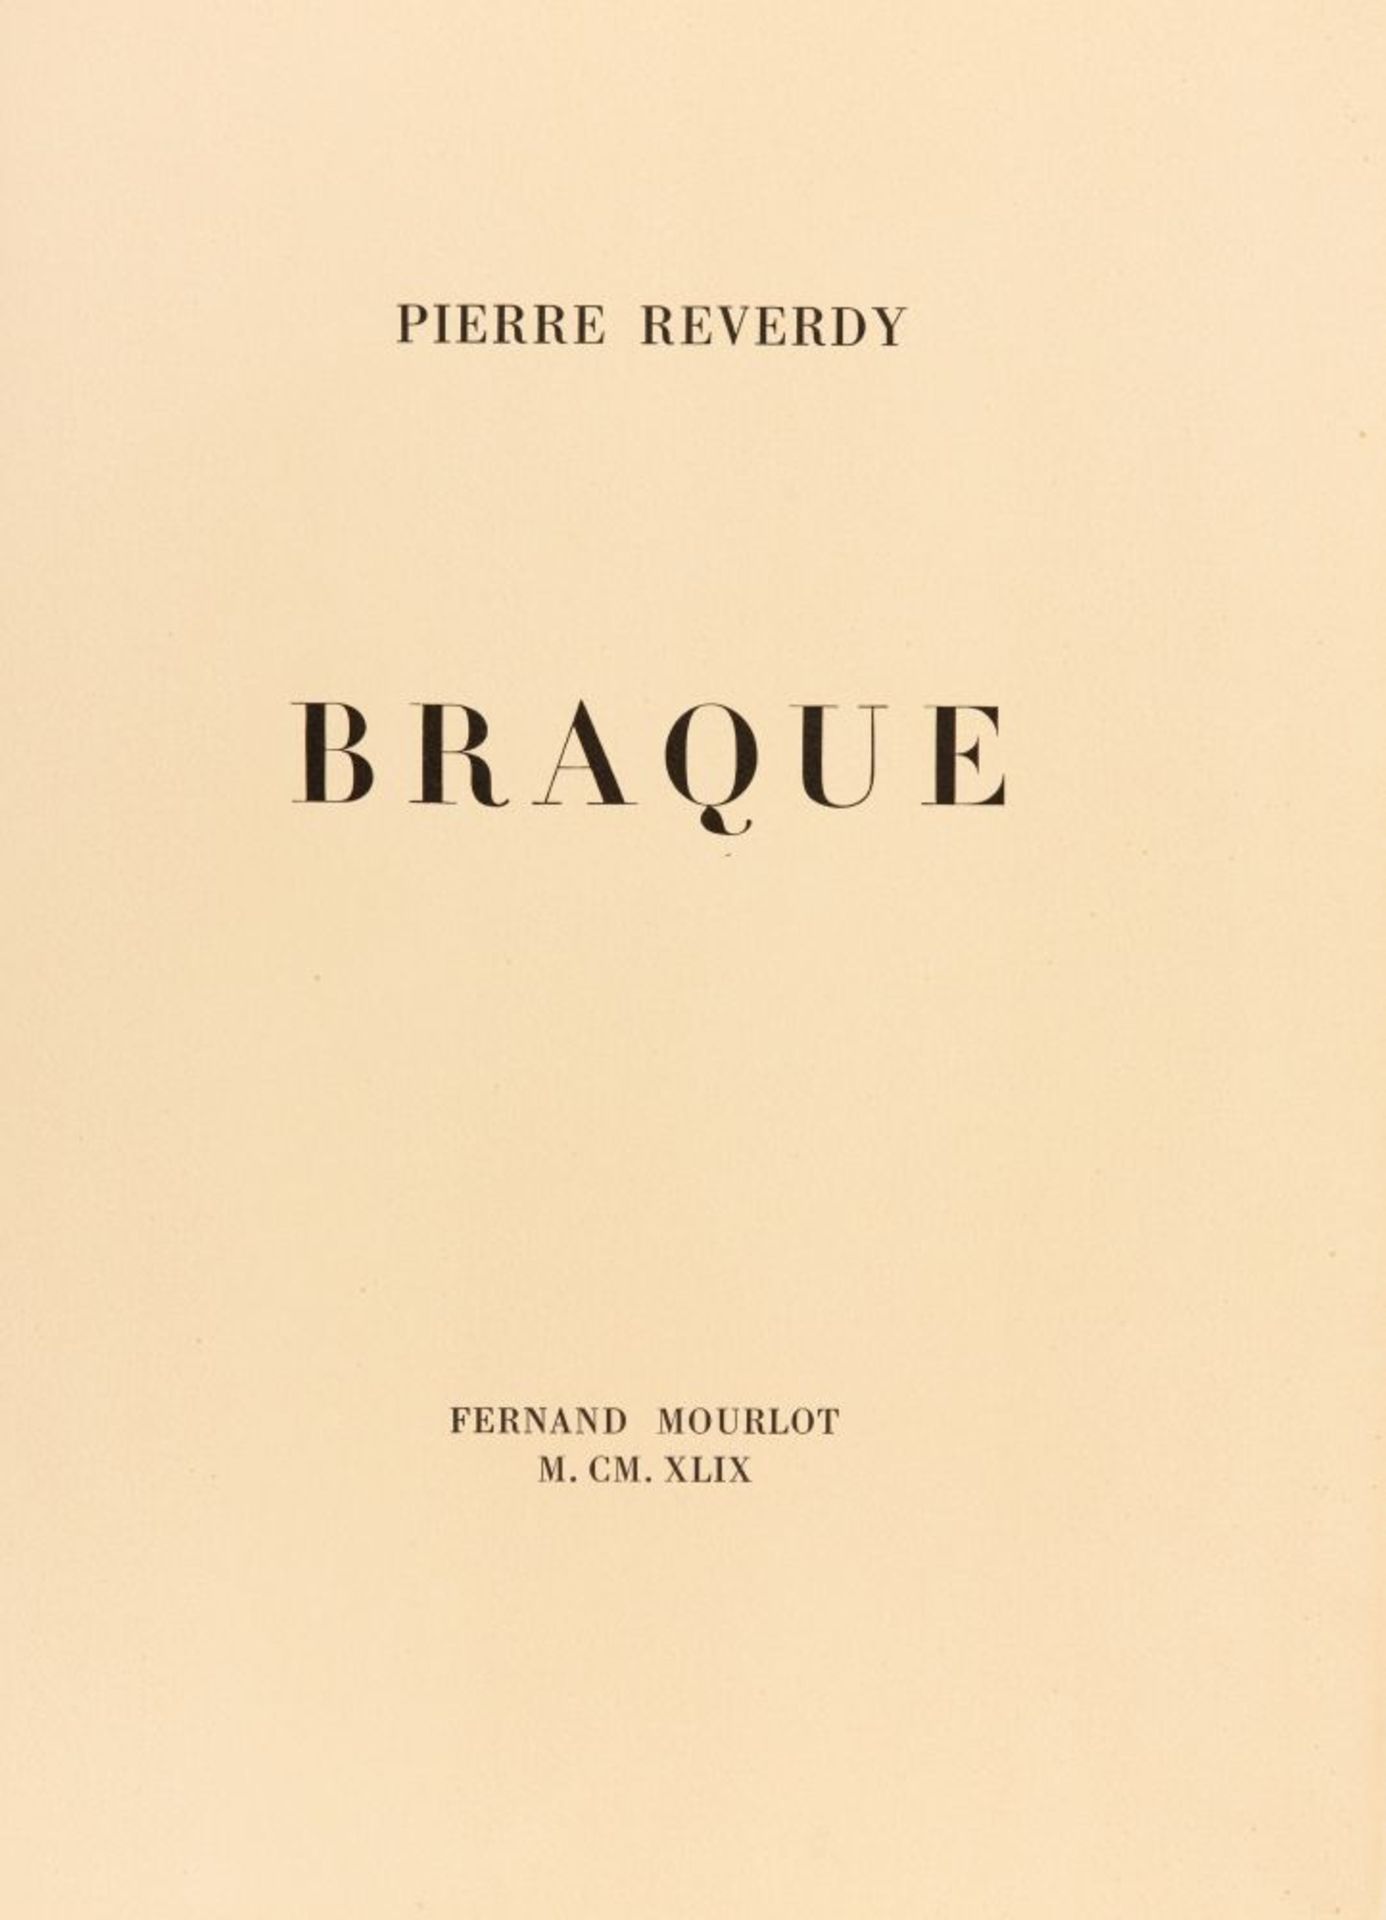 P. Reverdy / G. Braque, Une aventure méthodique. Paris, 1949-50. - sign. Ex. 126/250. - Image 2 of 2